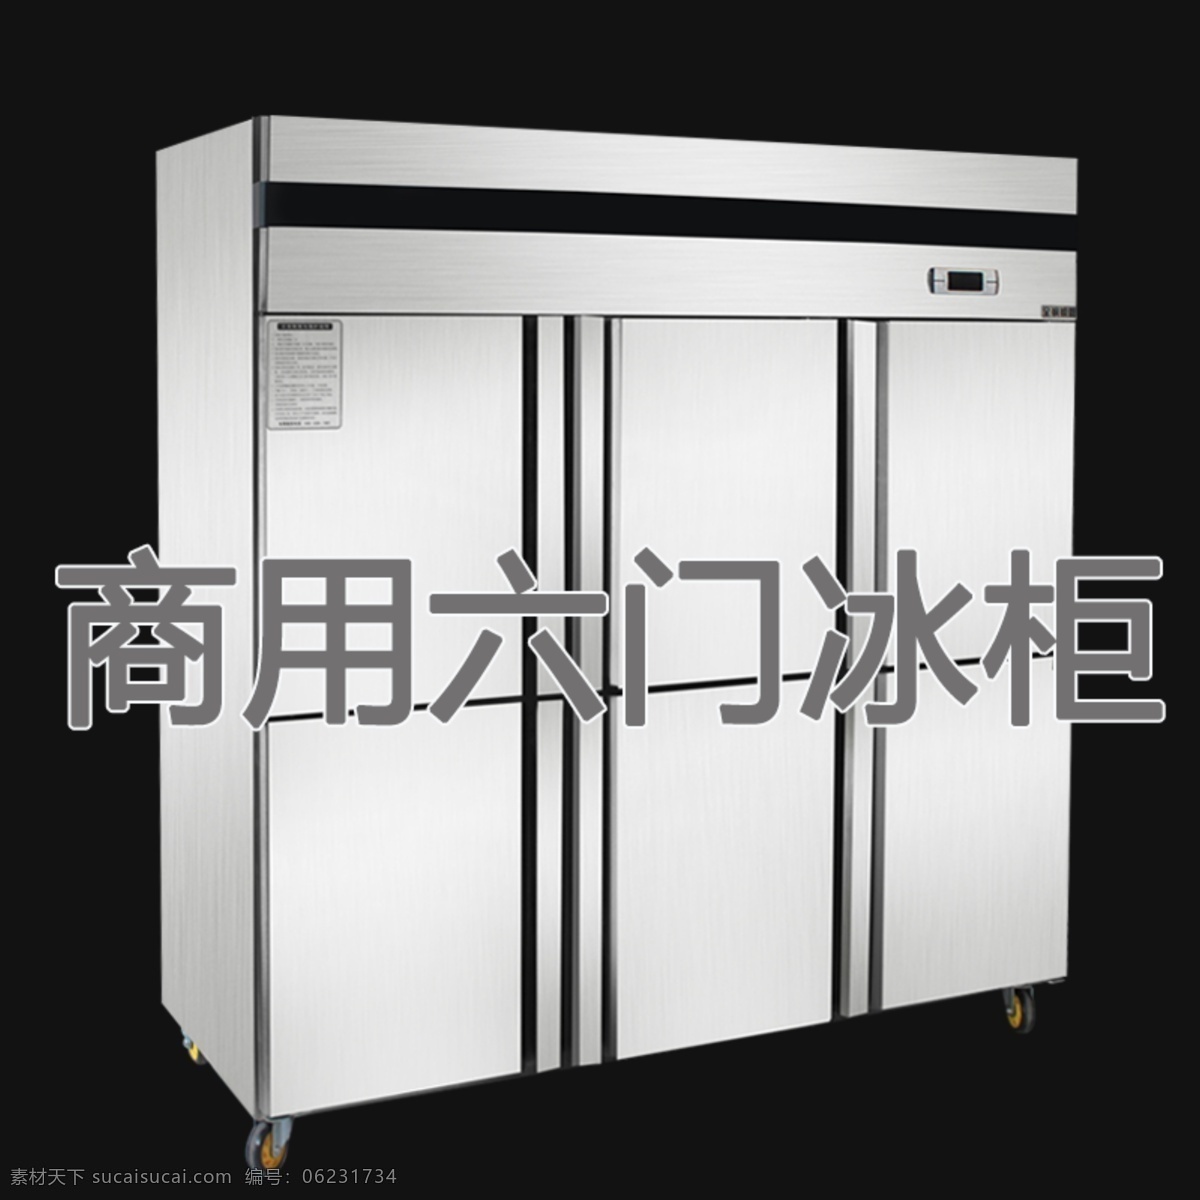 商用 四 六 门 冰柜 商用冰柜 四门冰柜 六门冰柜 冰箱 psd冰柜 分层